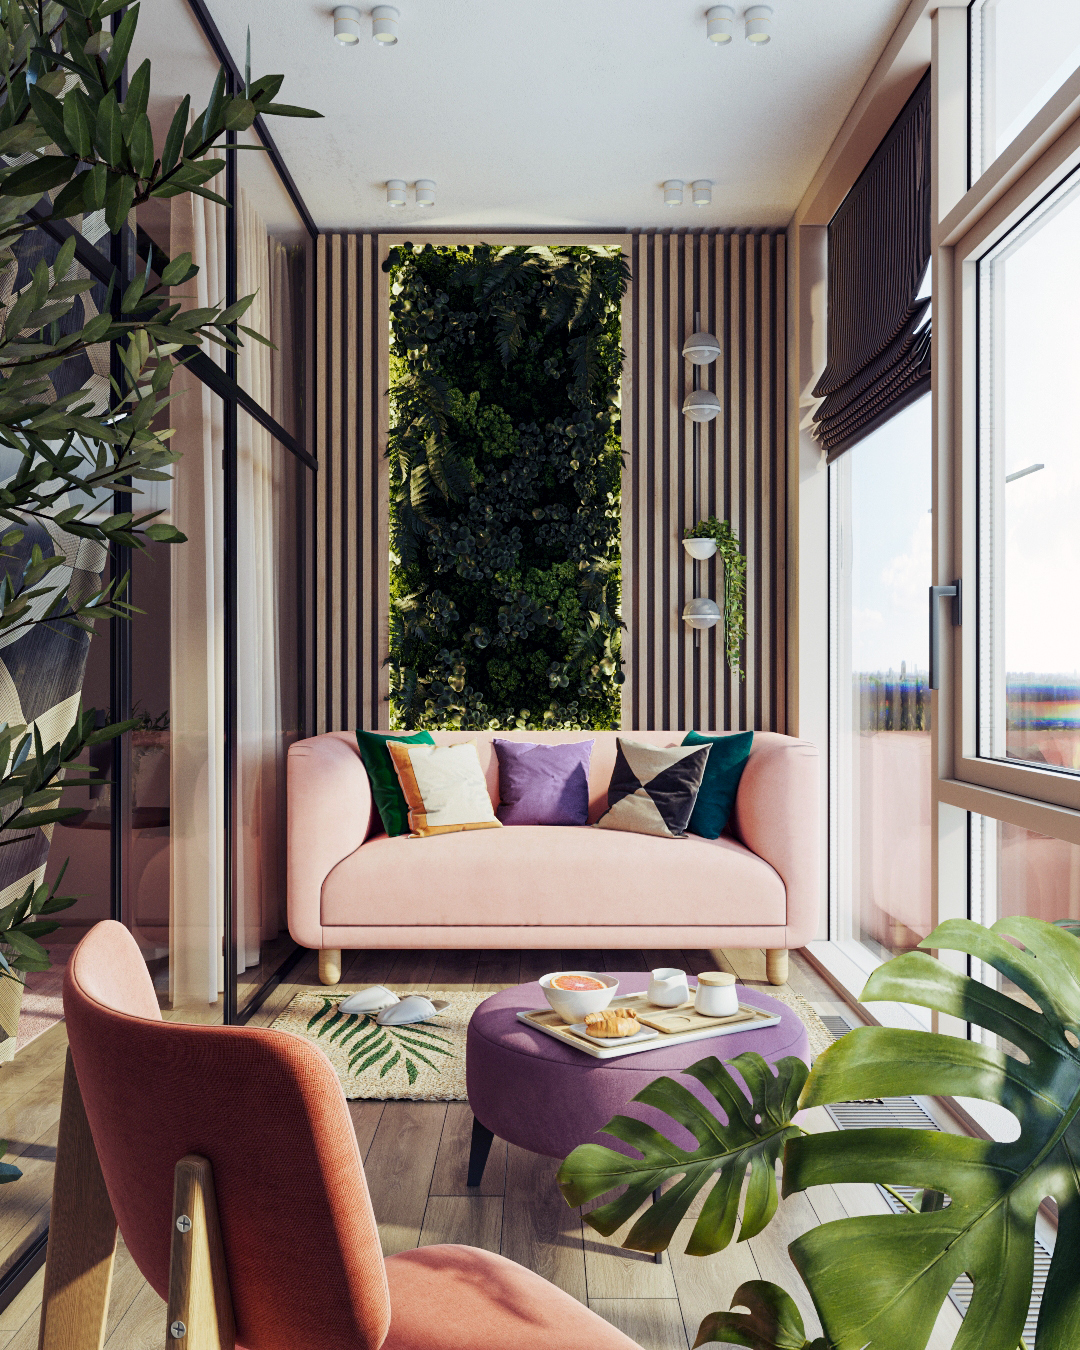 Интерьер лоджии с вертикальным озеленением и розовым диваном Tribeca: фото